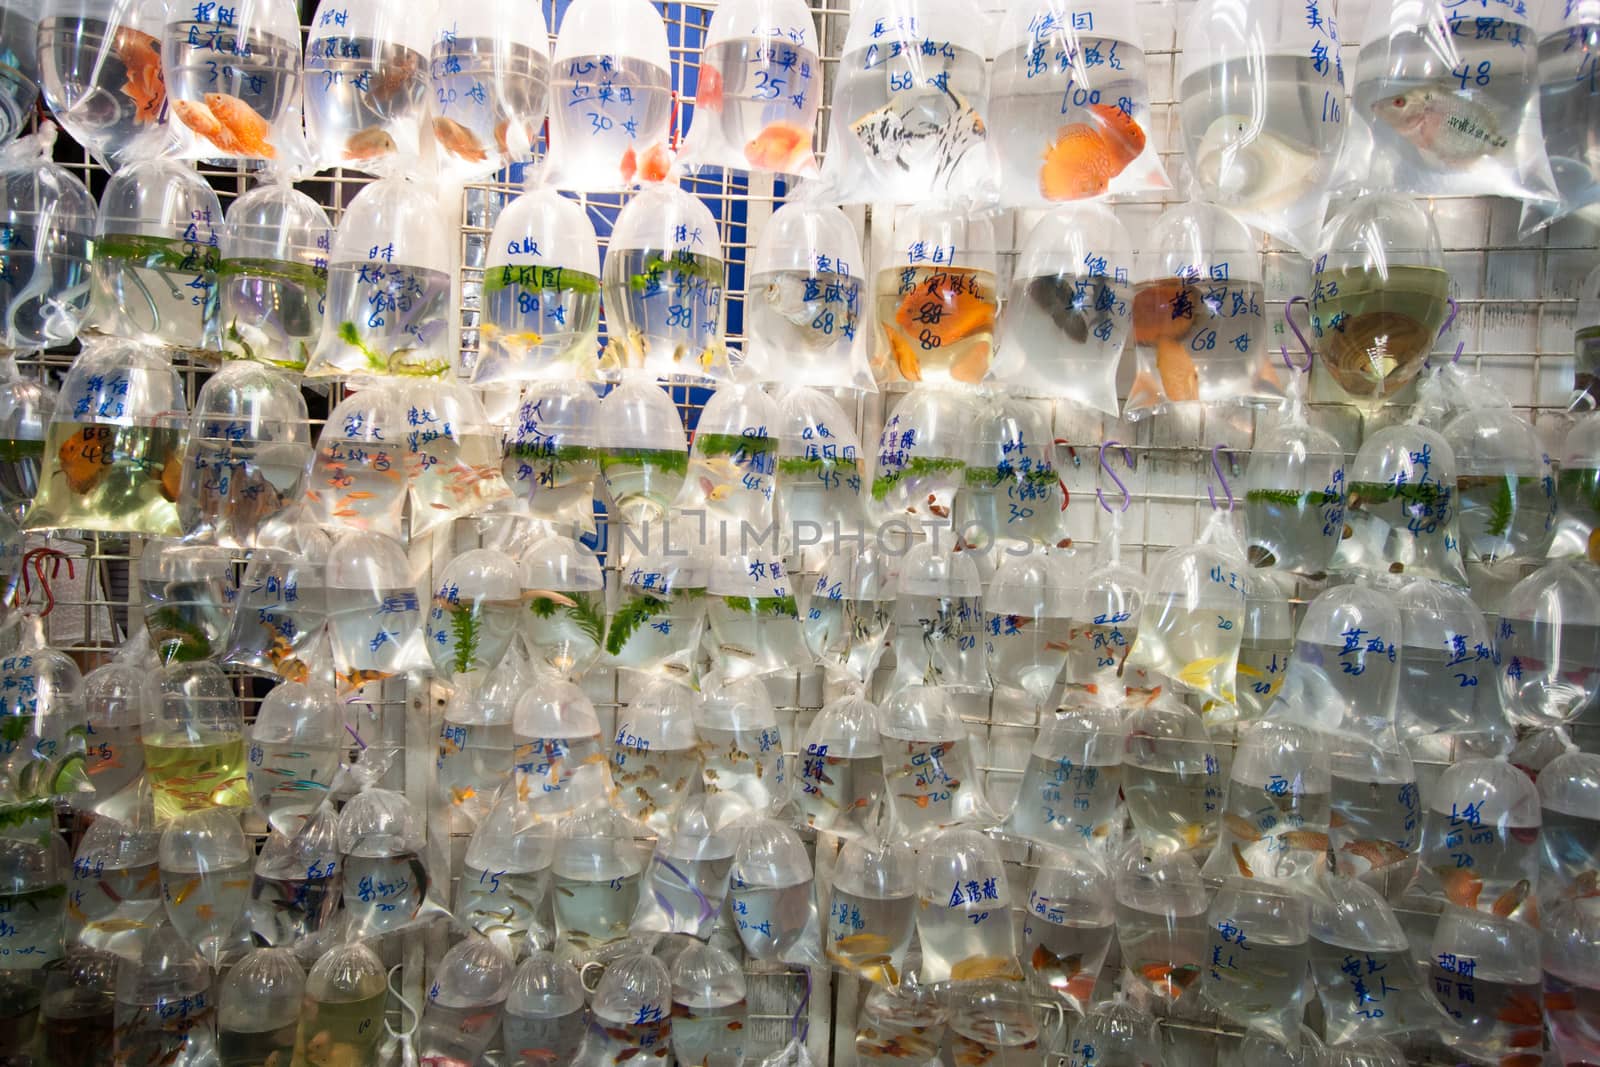 Aquarium fish displayed in plastic bags for sale in the Goldfish market in Mong Kok, Hong Kong.